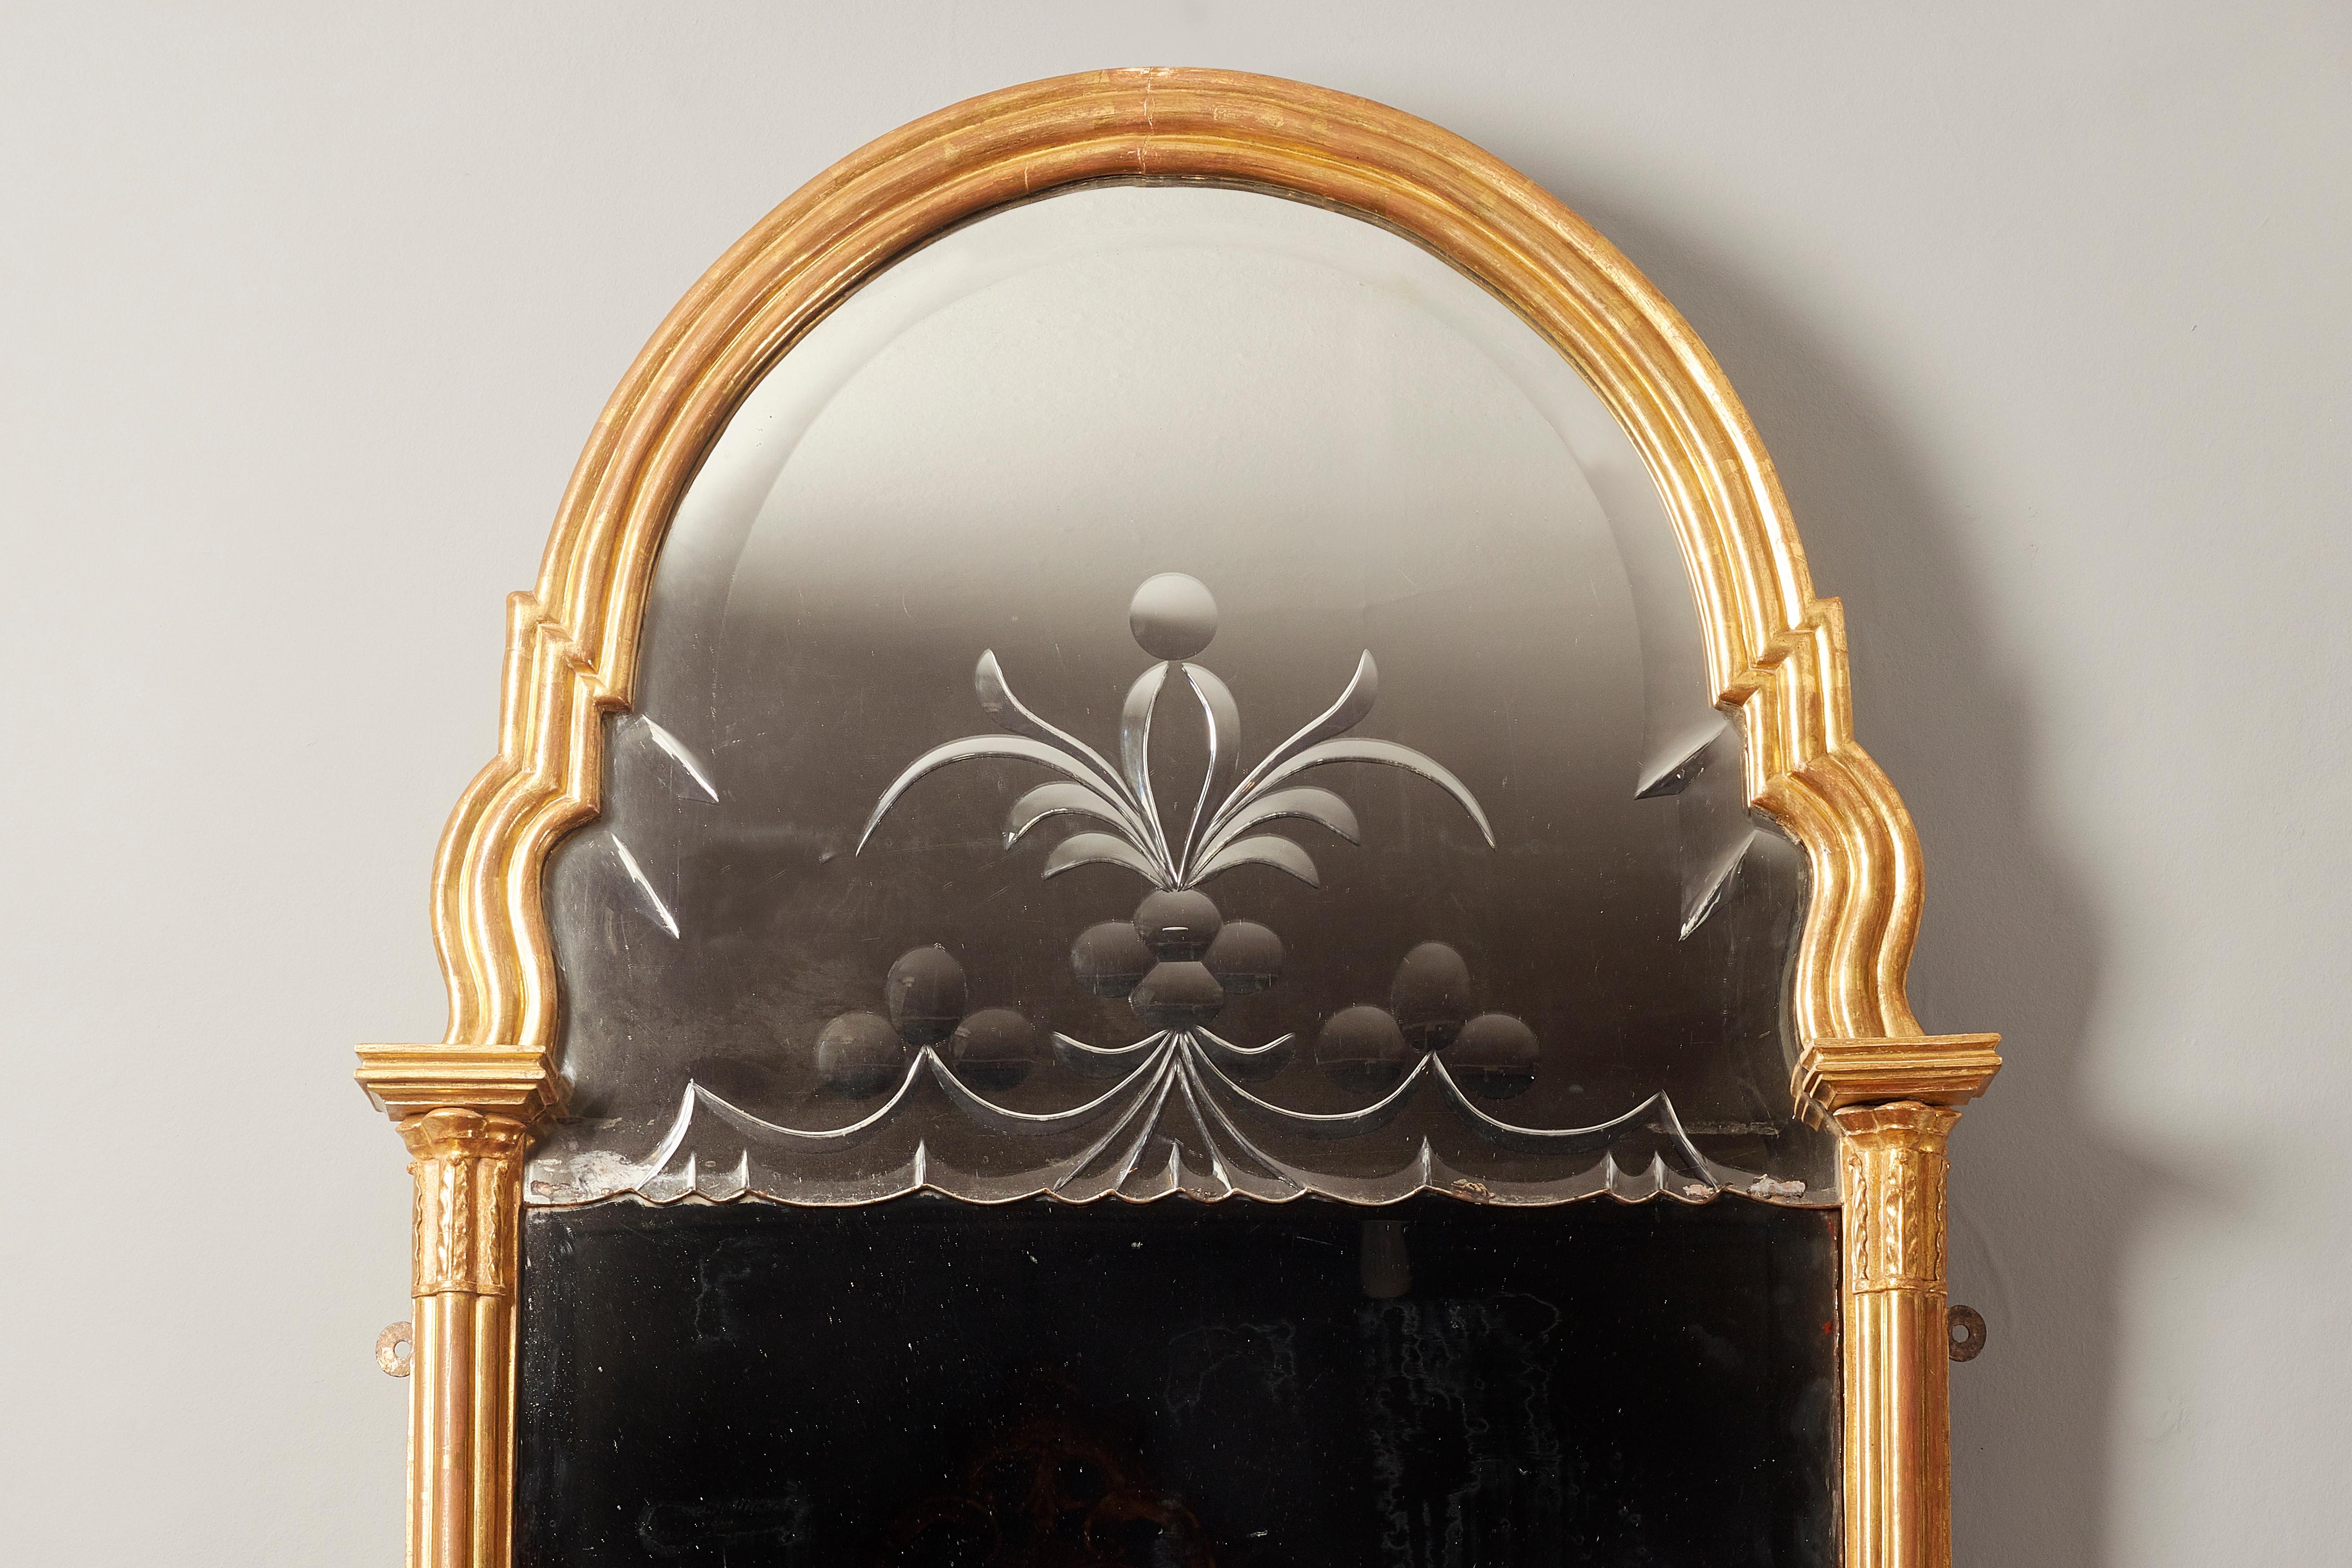 Miroir en bois doré sculpté de style Queen Anne, vers 1700-1710. 